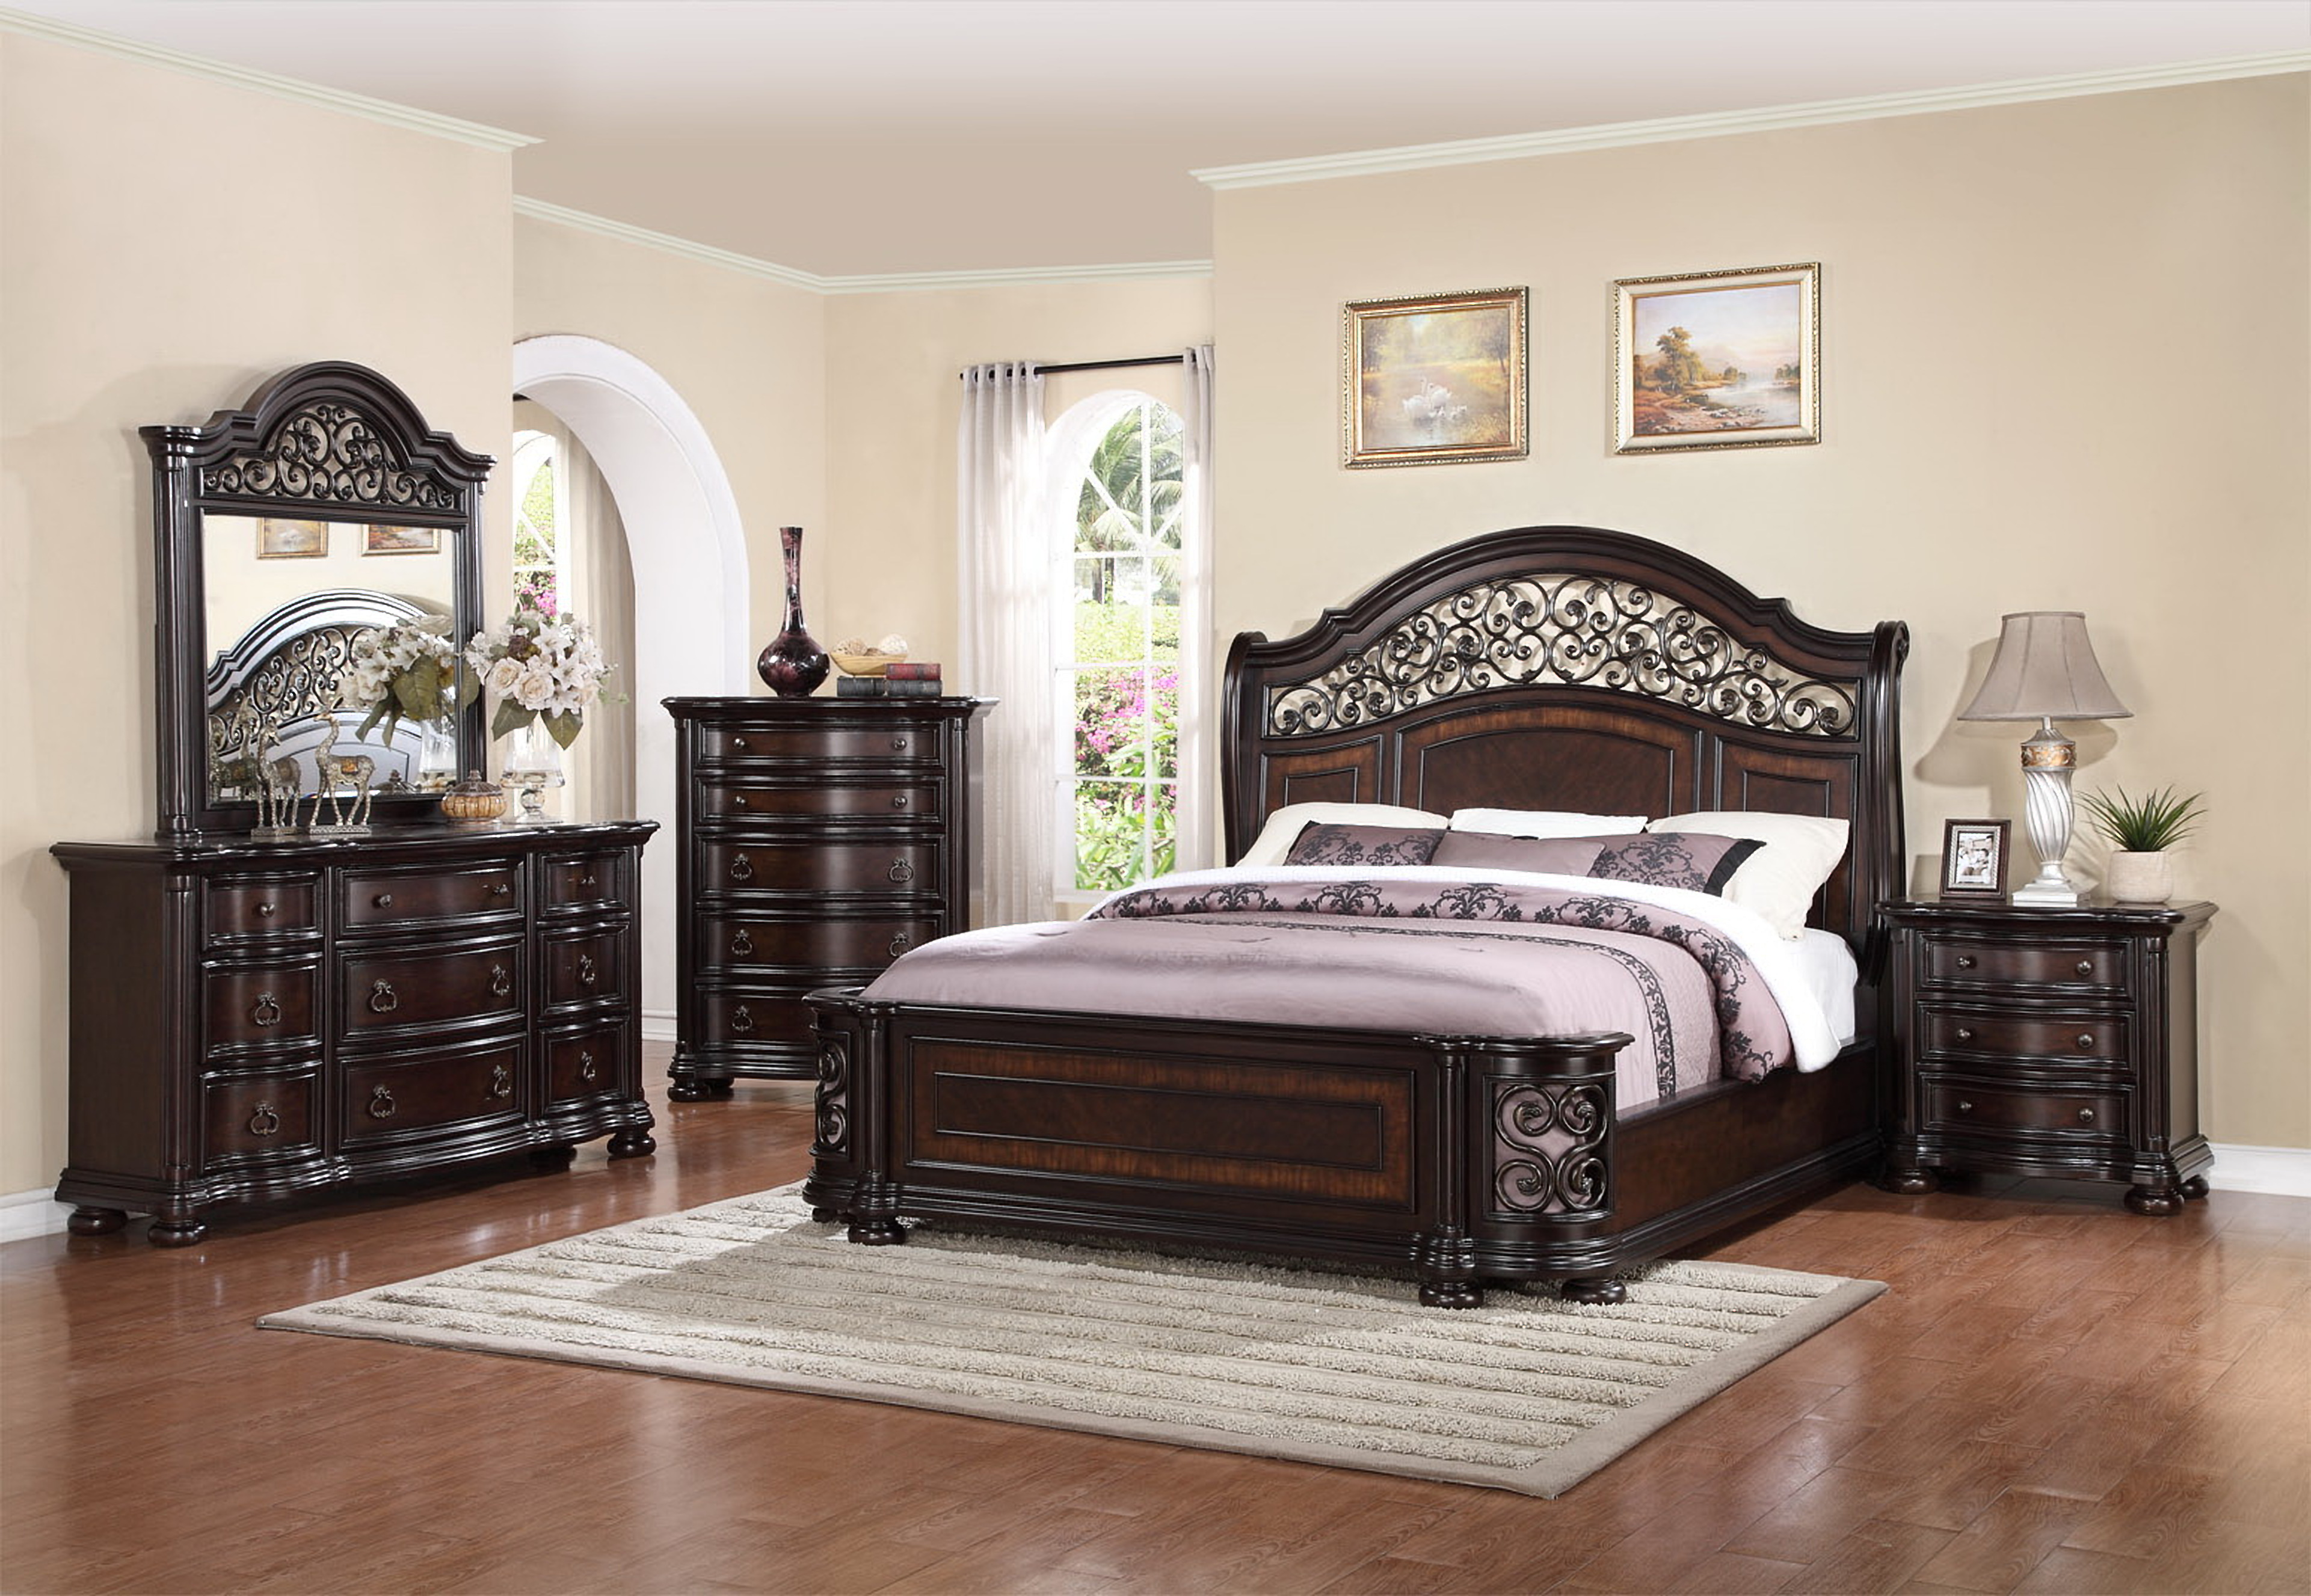 Jaxson 8 piece queen size bedroom set 3599.99 Furniture